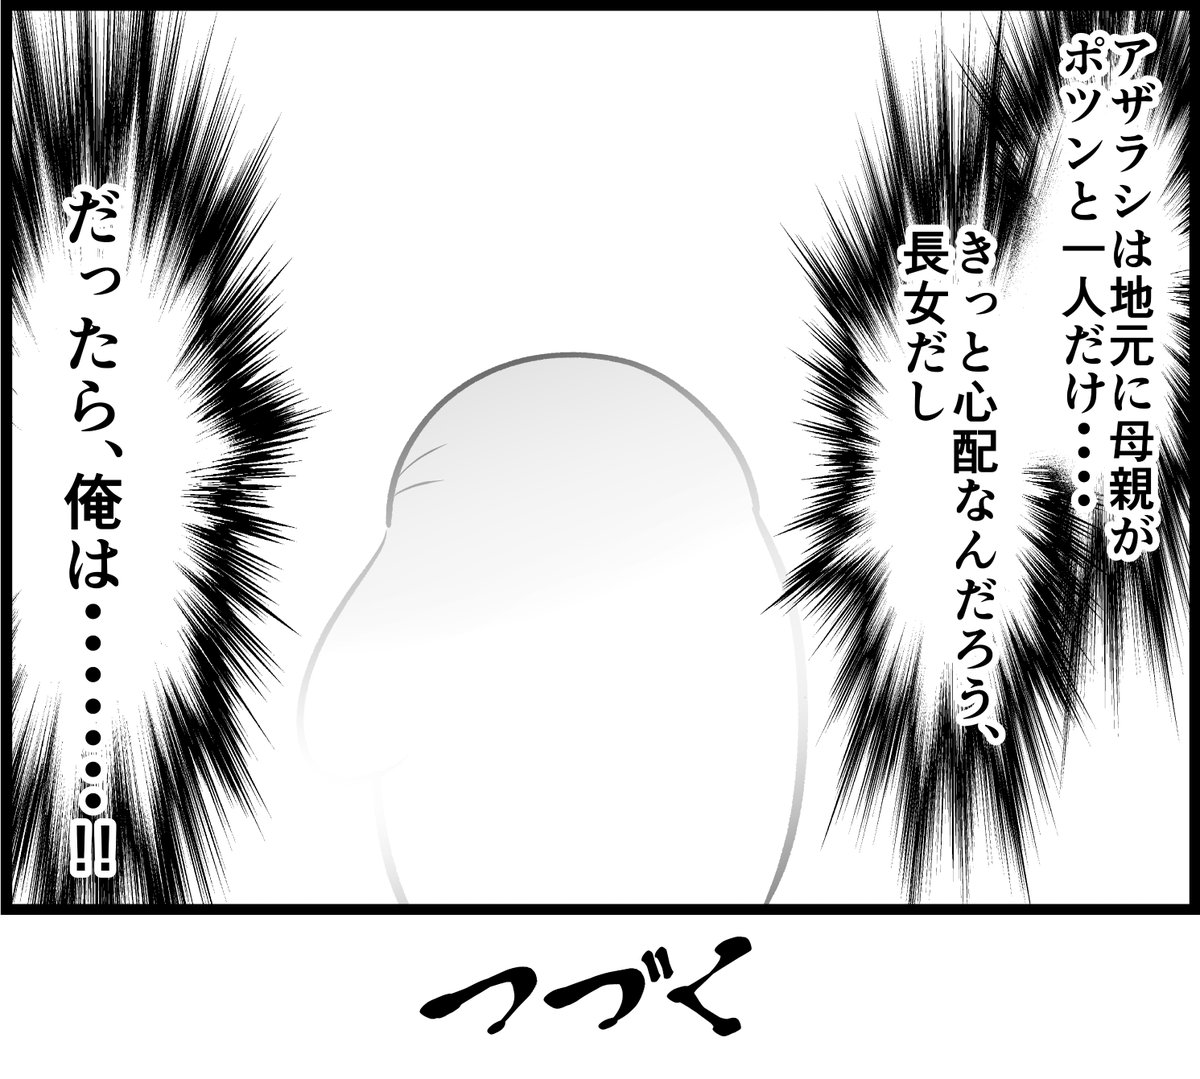 オタクがプロポーズしたレポ漫画
第11話「新たなる生活」2/2 